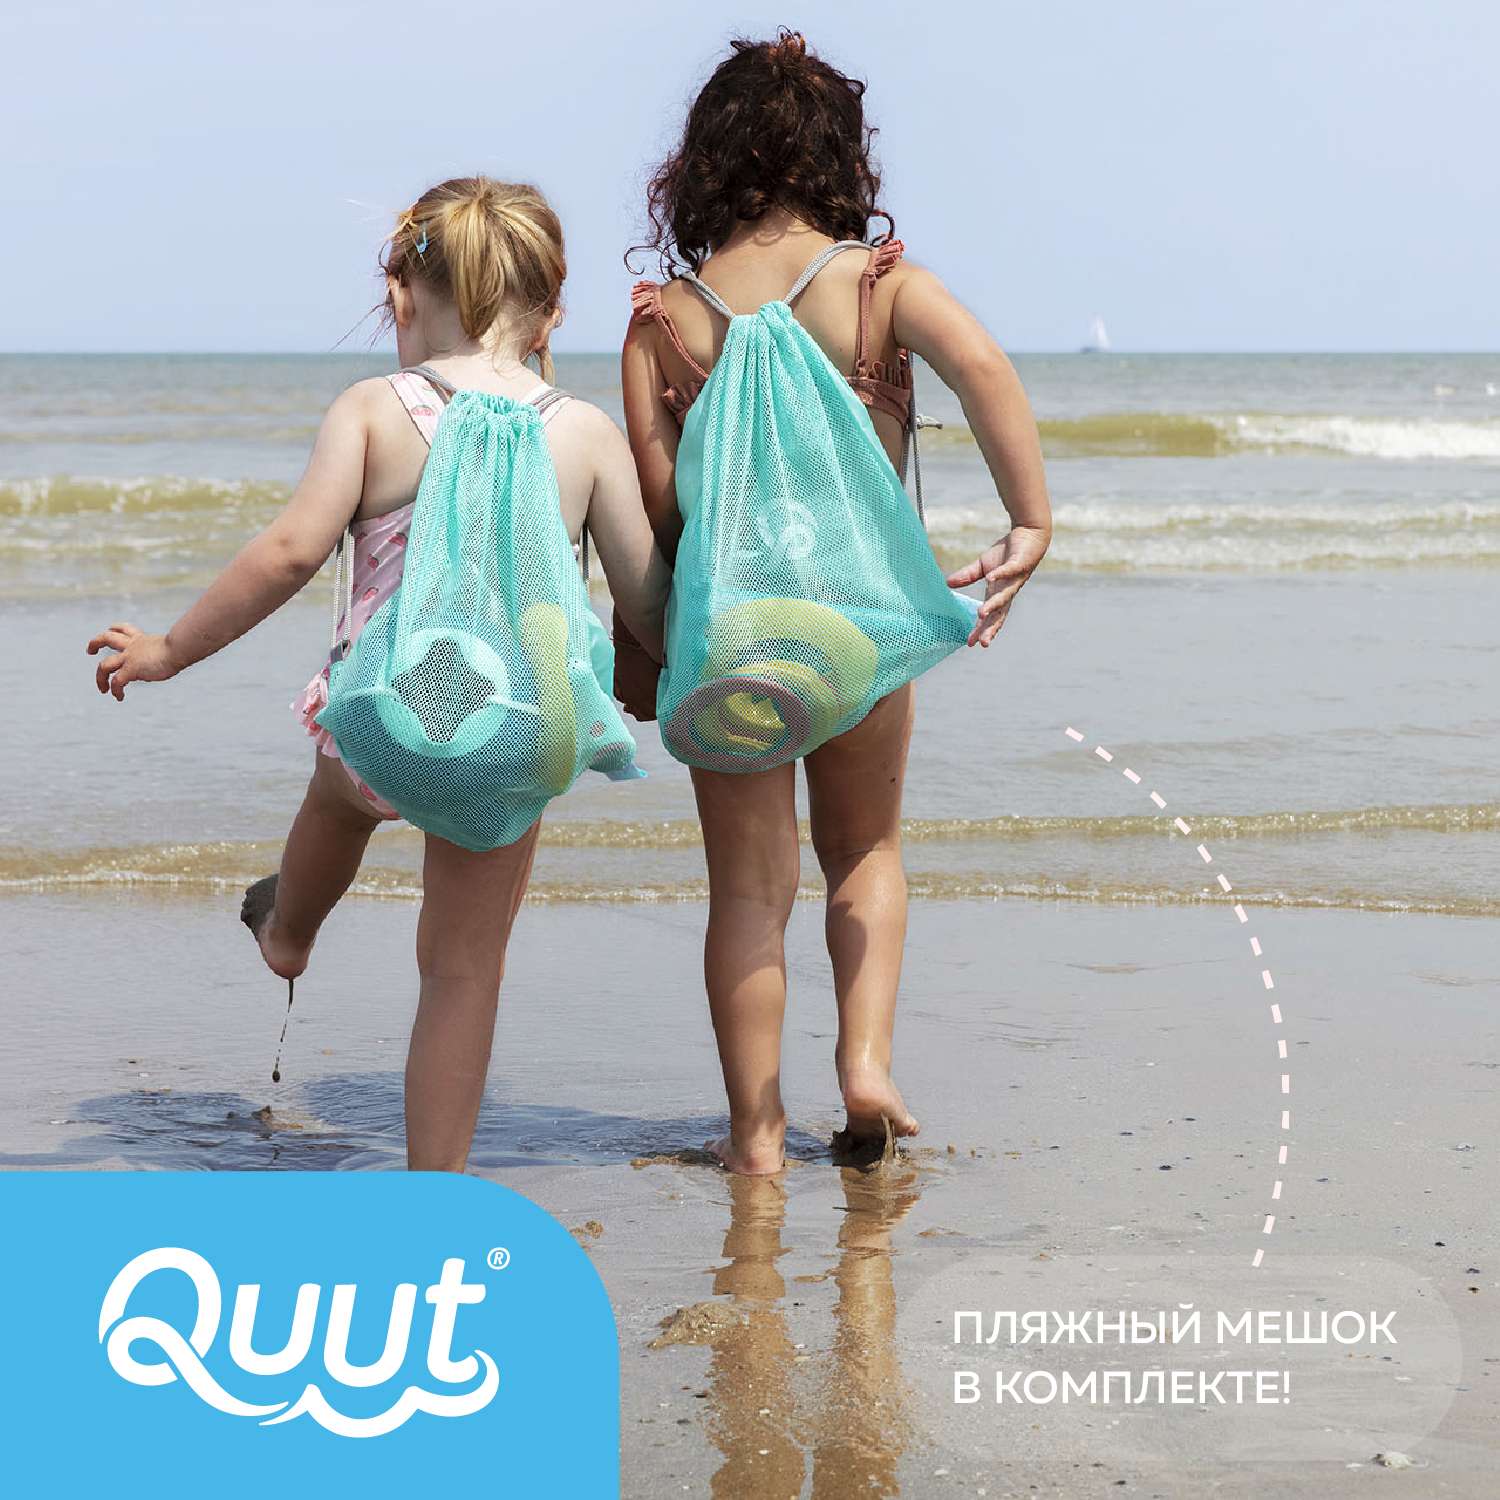 Пляжный набор QUUT Mini Ballo + Cuppi + сердечко SunnyLove в пляжном мешке - фото 4